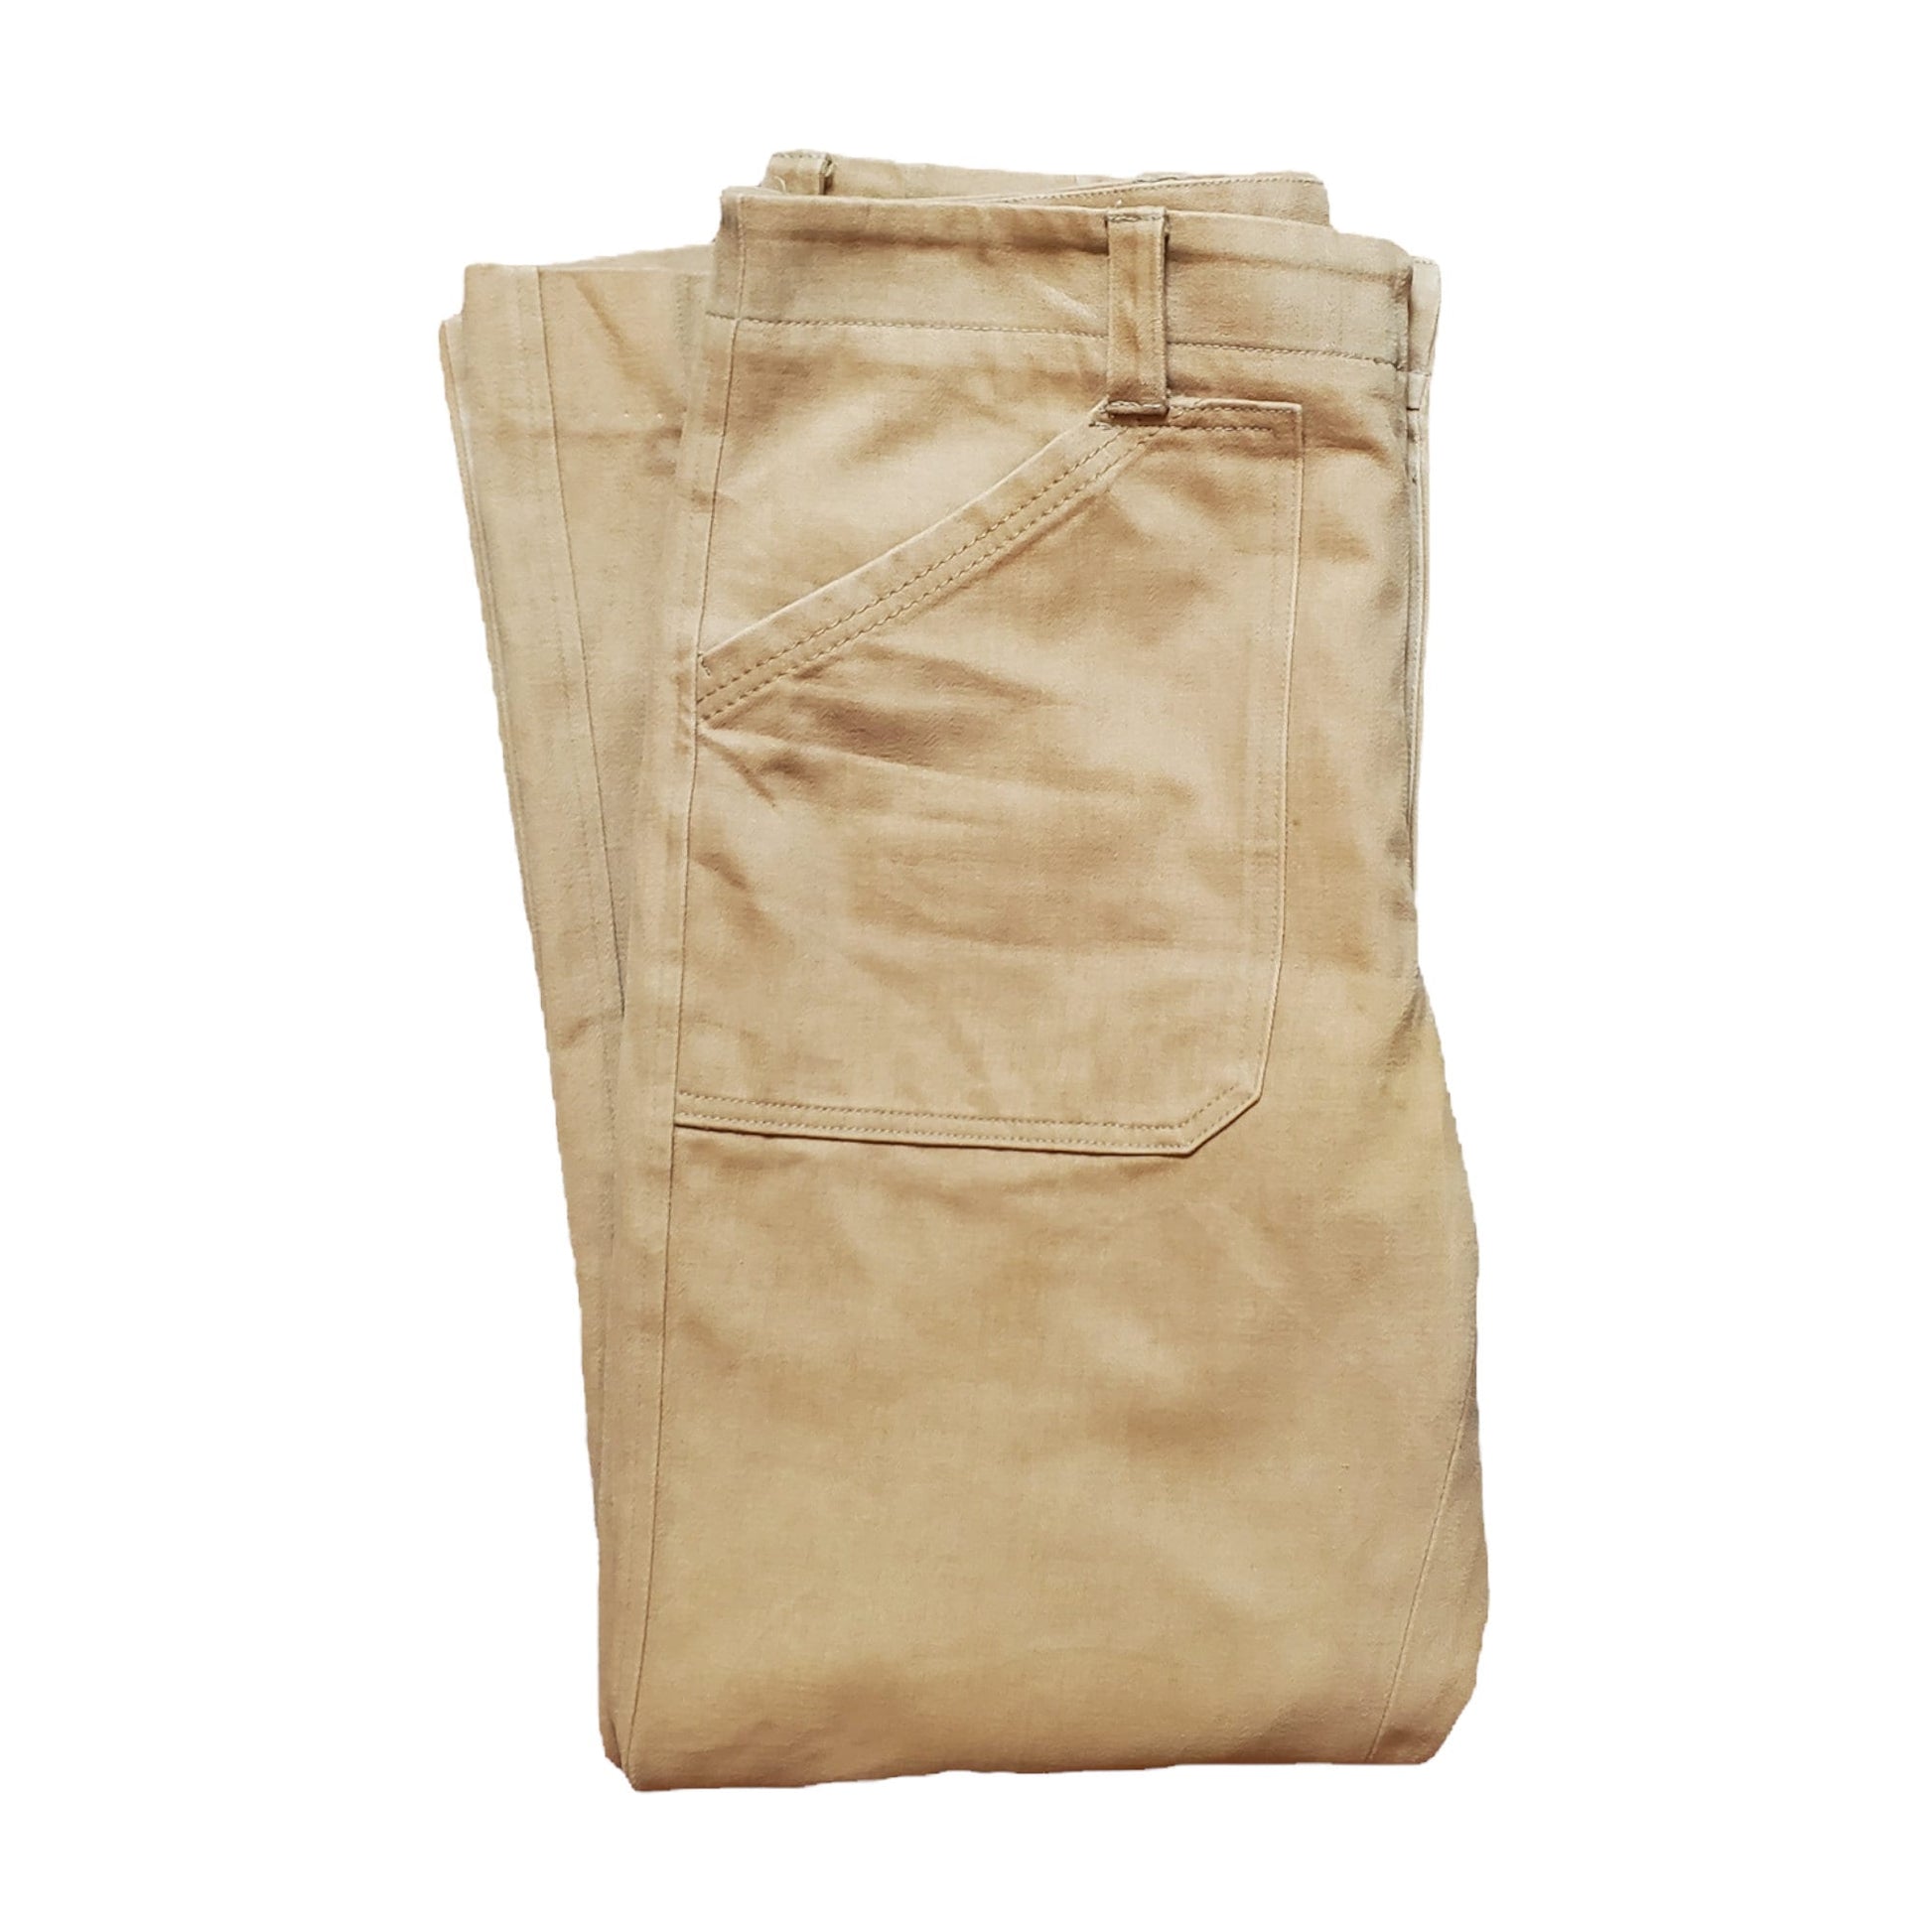 1970s Mighty Mac Moleskin Pants Size 34x29.75